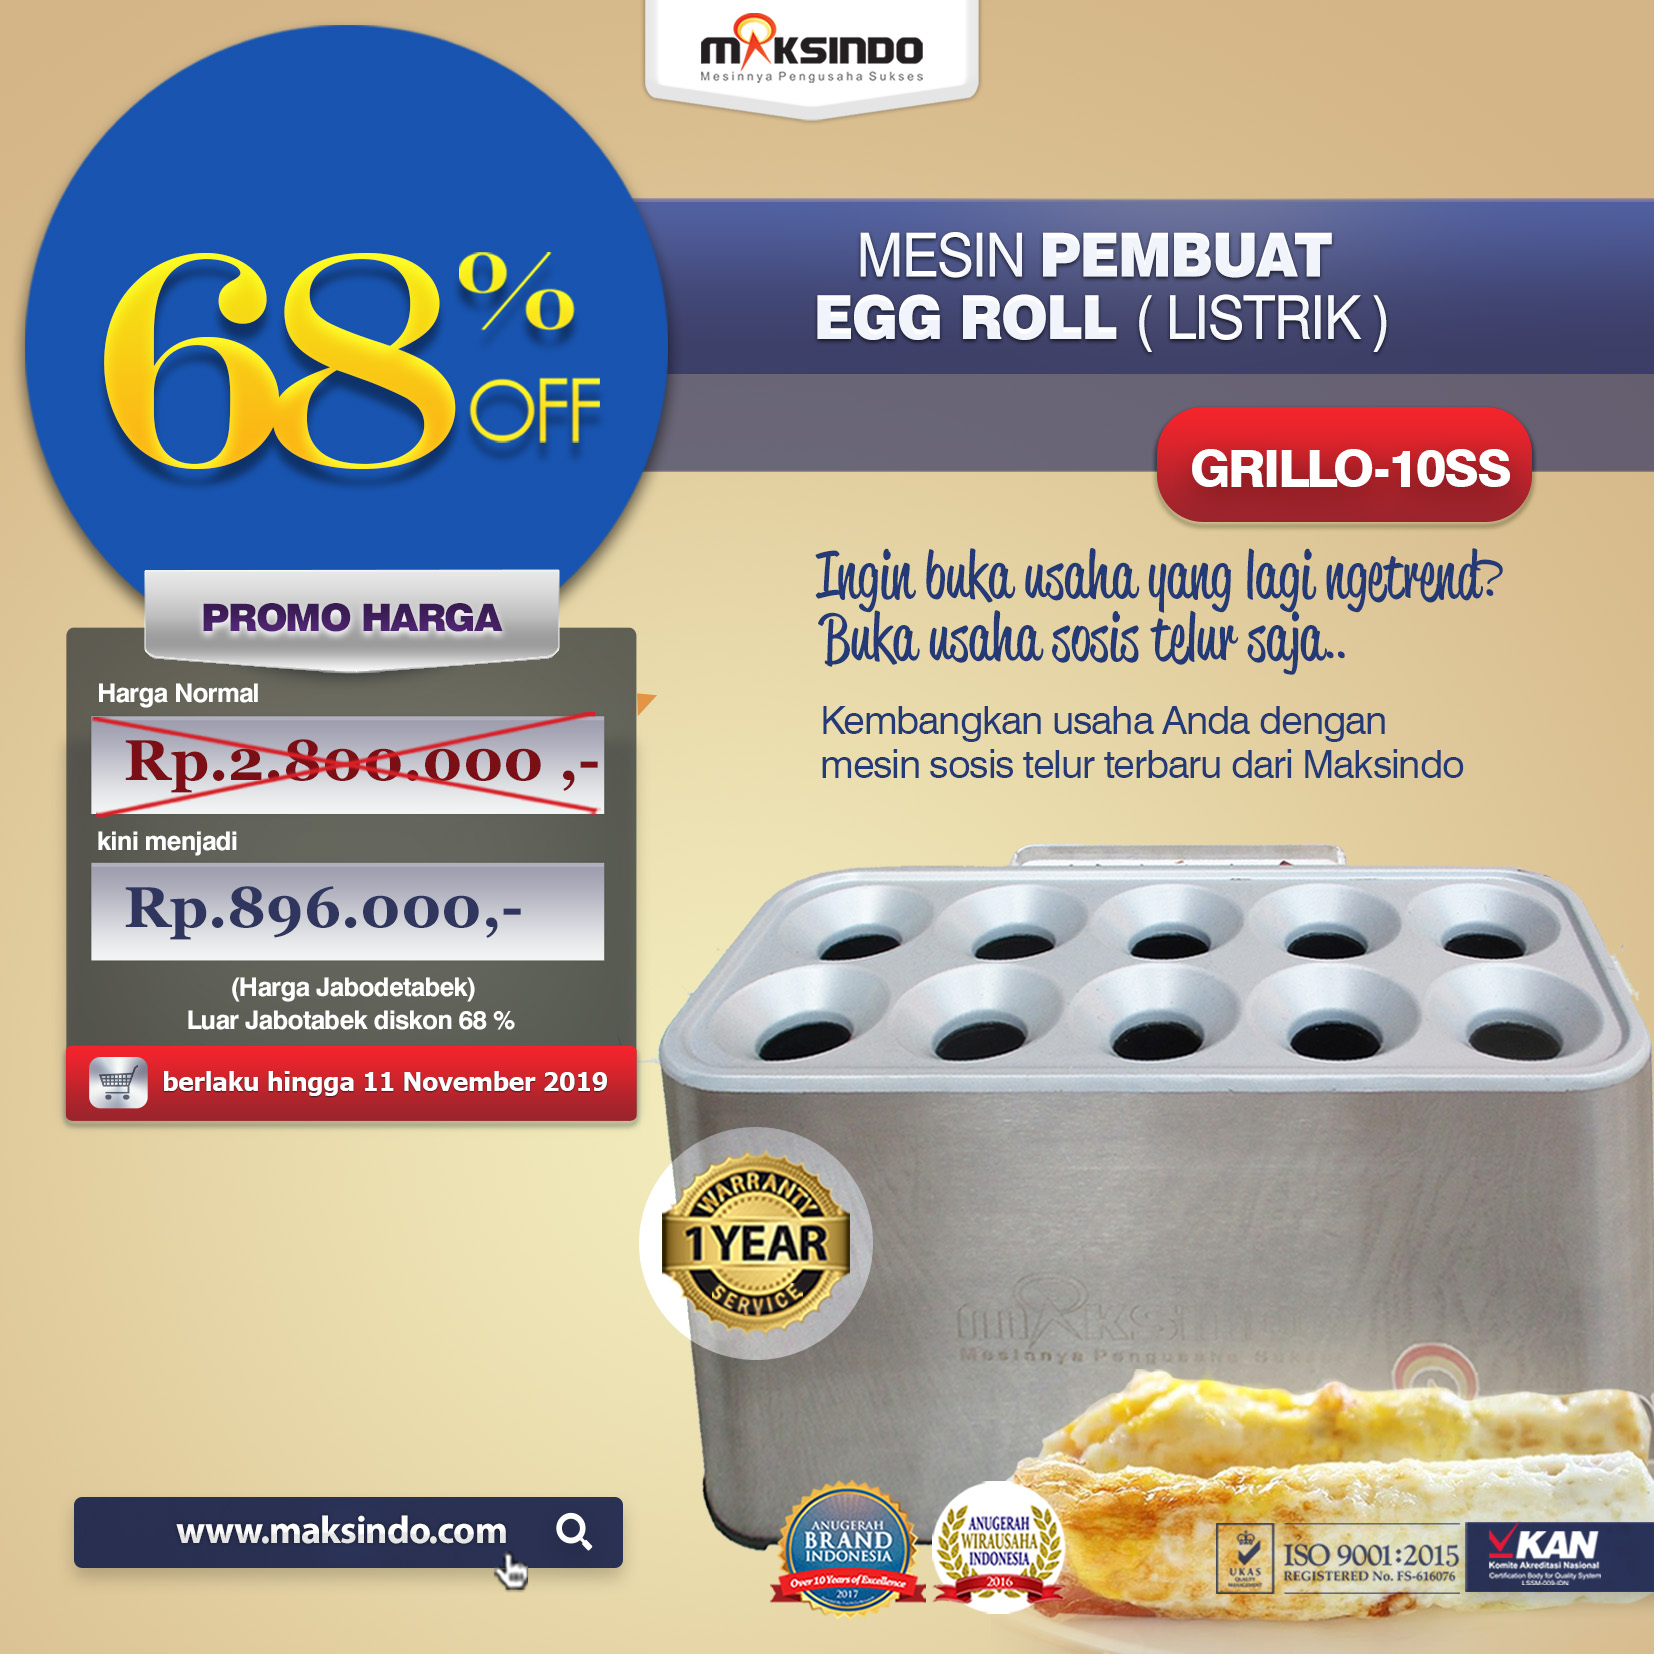 Jual Mesin Pembuat Egg Roll (Listrik) GRILLO-10SS di Pekanbaru